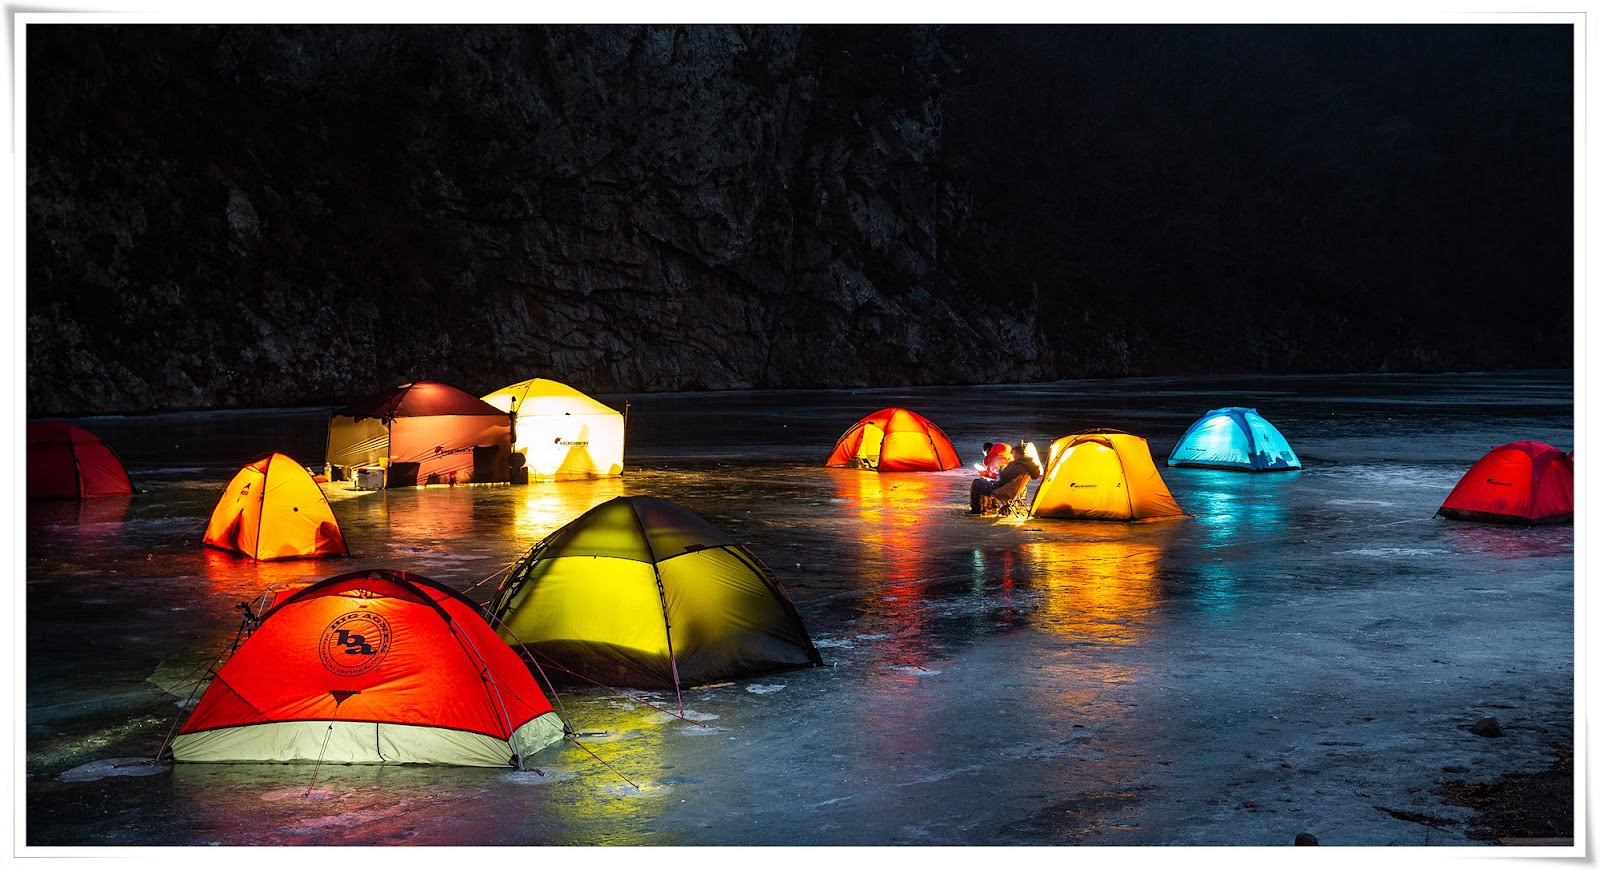 Chàng trai Việt vượt 300 km đi cắm trại trên sông băng tuyệt đẹp ở Hàn Quốc - Ảnh 9.